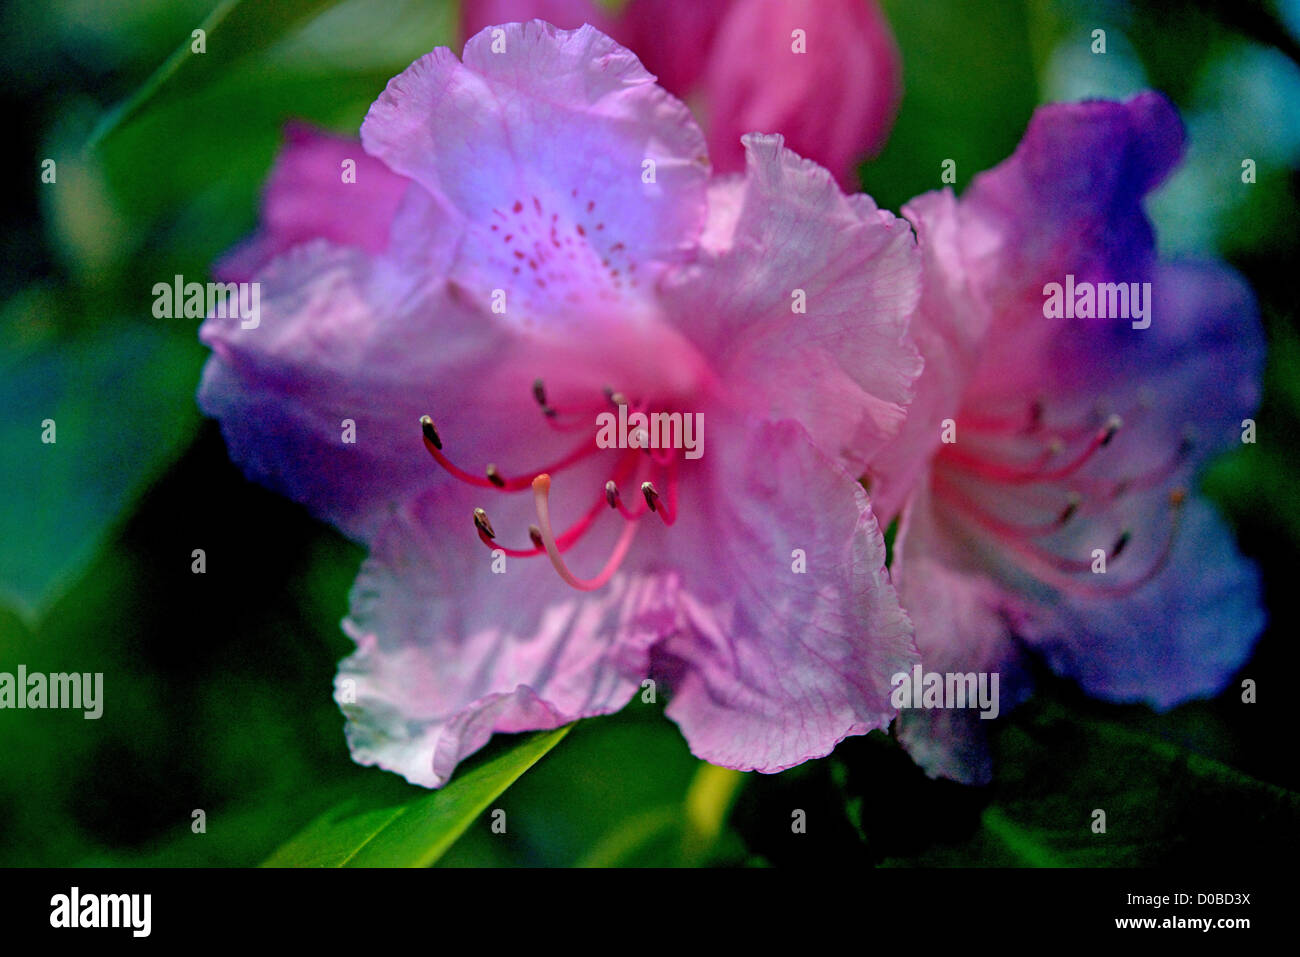 Pink Pearl Rhododendron dans une Image Composite Montage créatif Banque D'Images